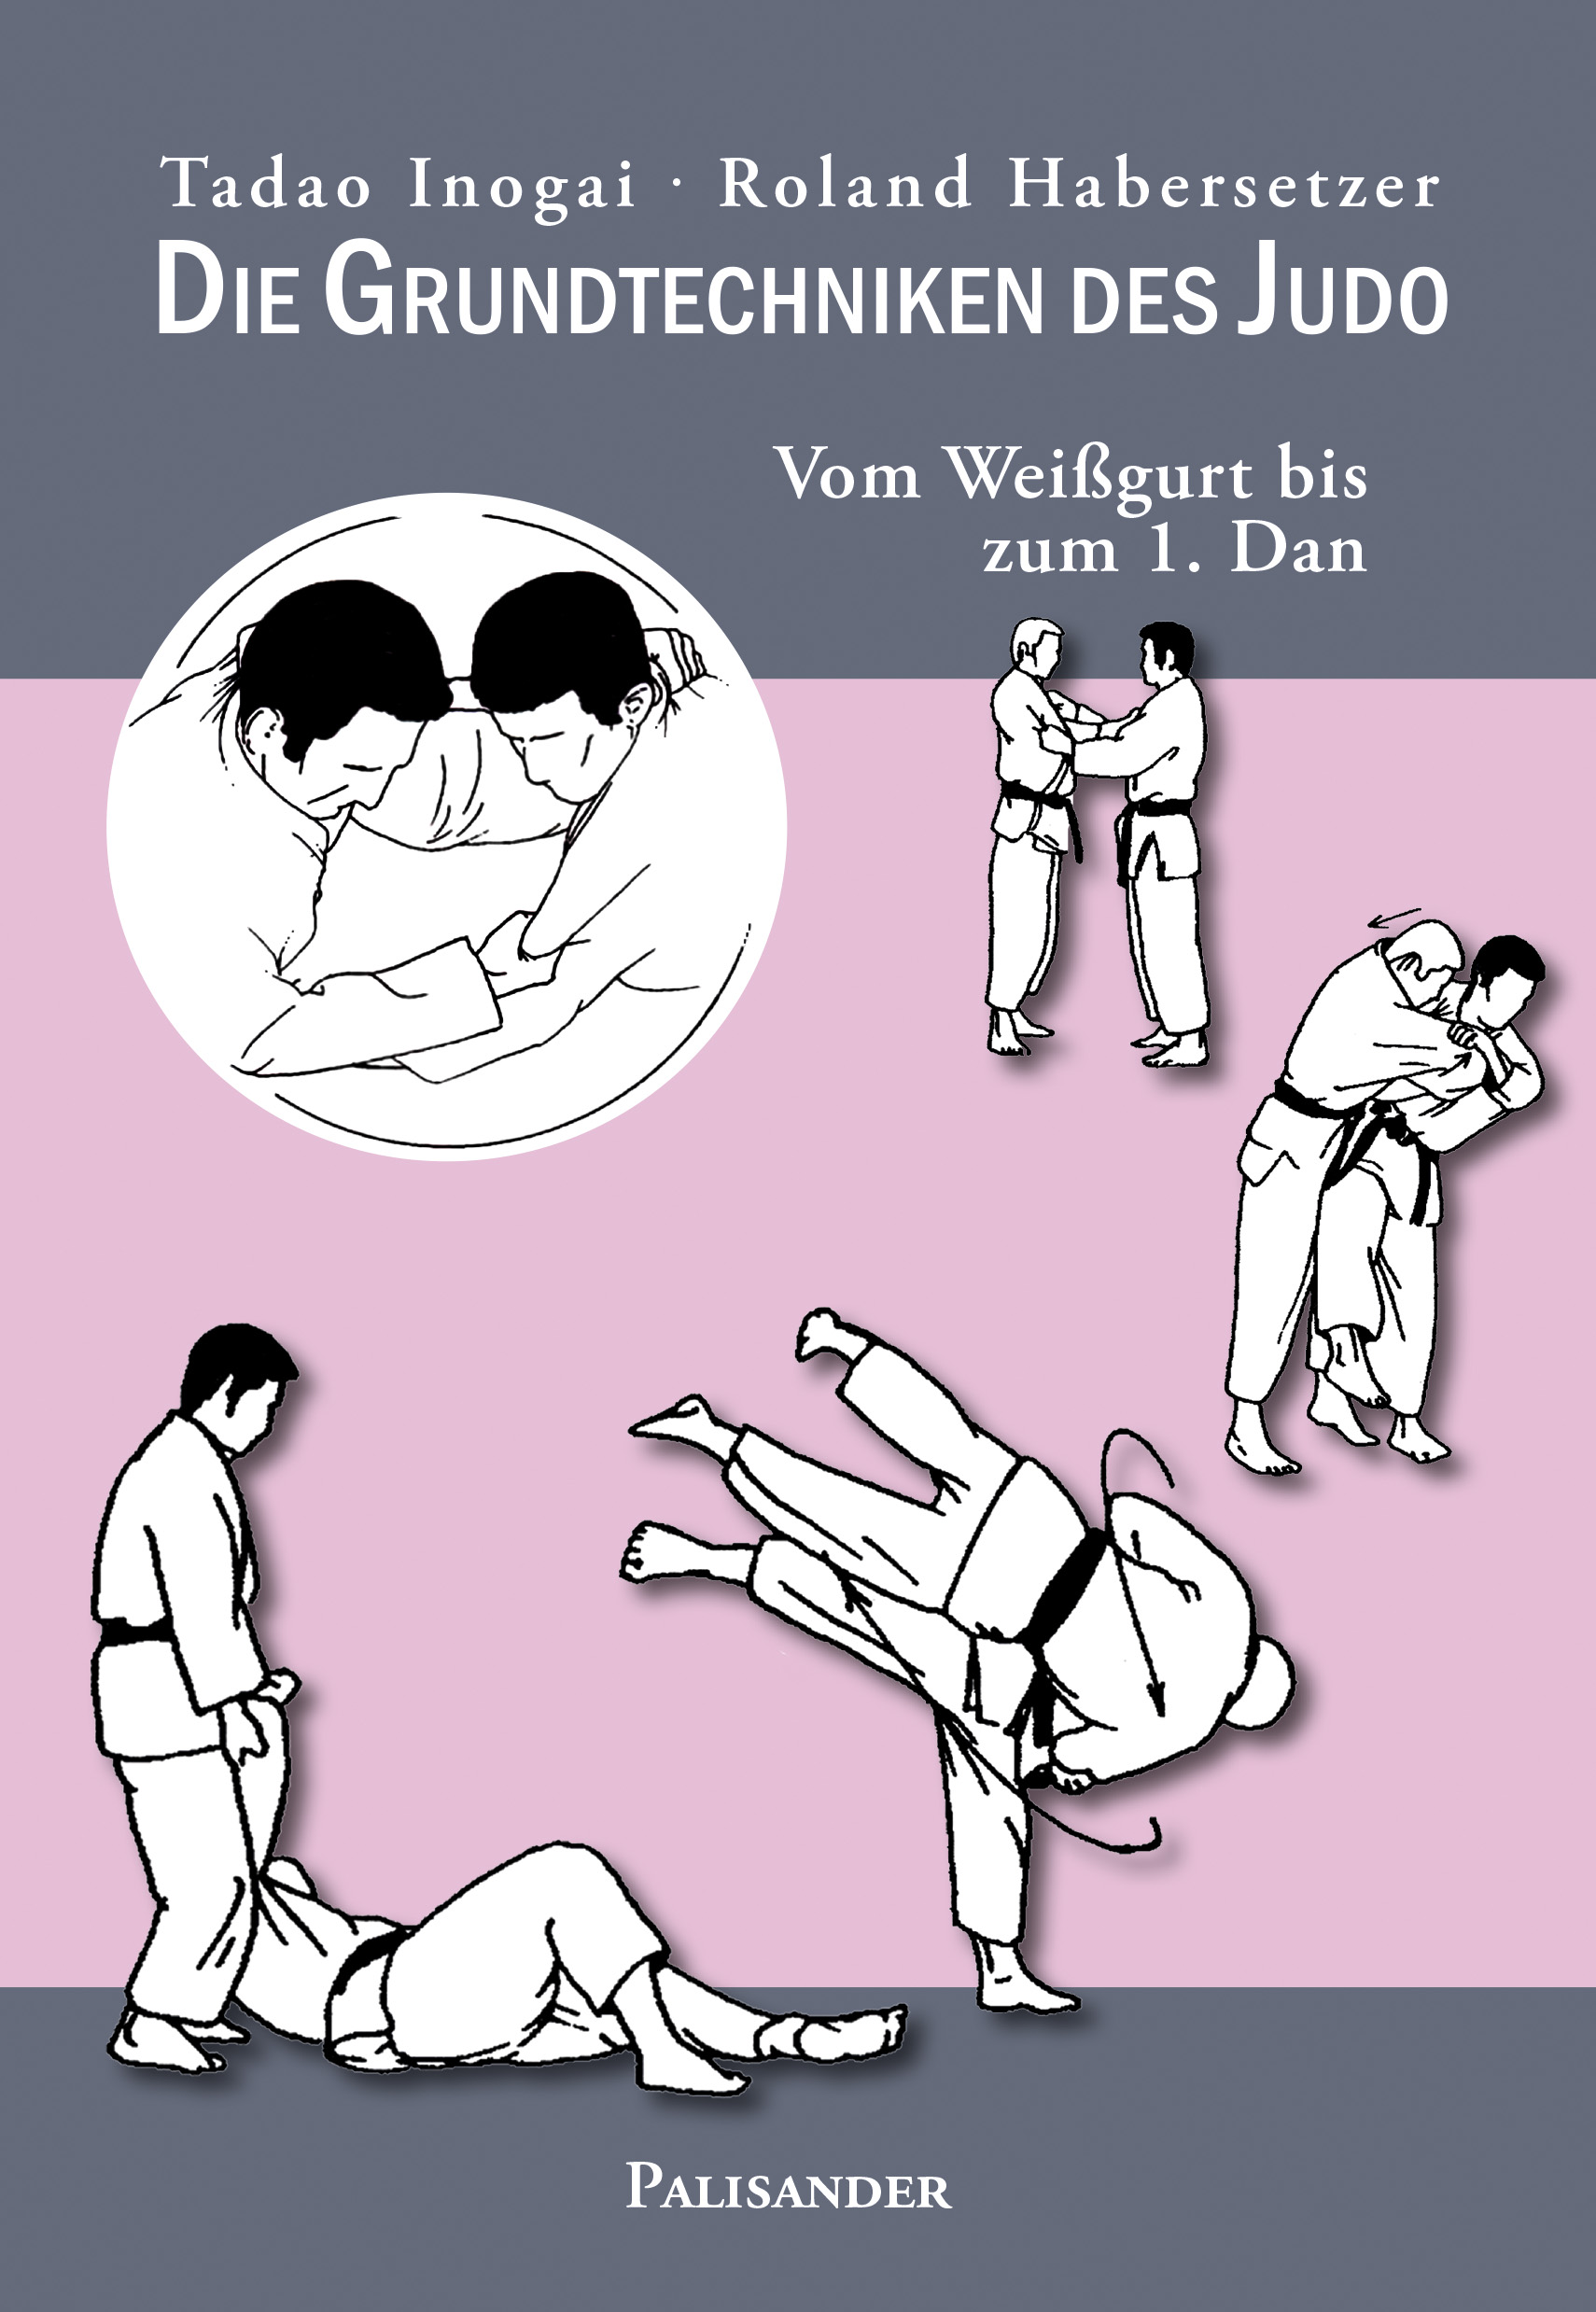 Die Grundtechniken des Judo (Inogai, T. / Habersetzer, R.)